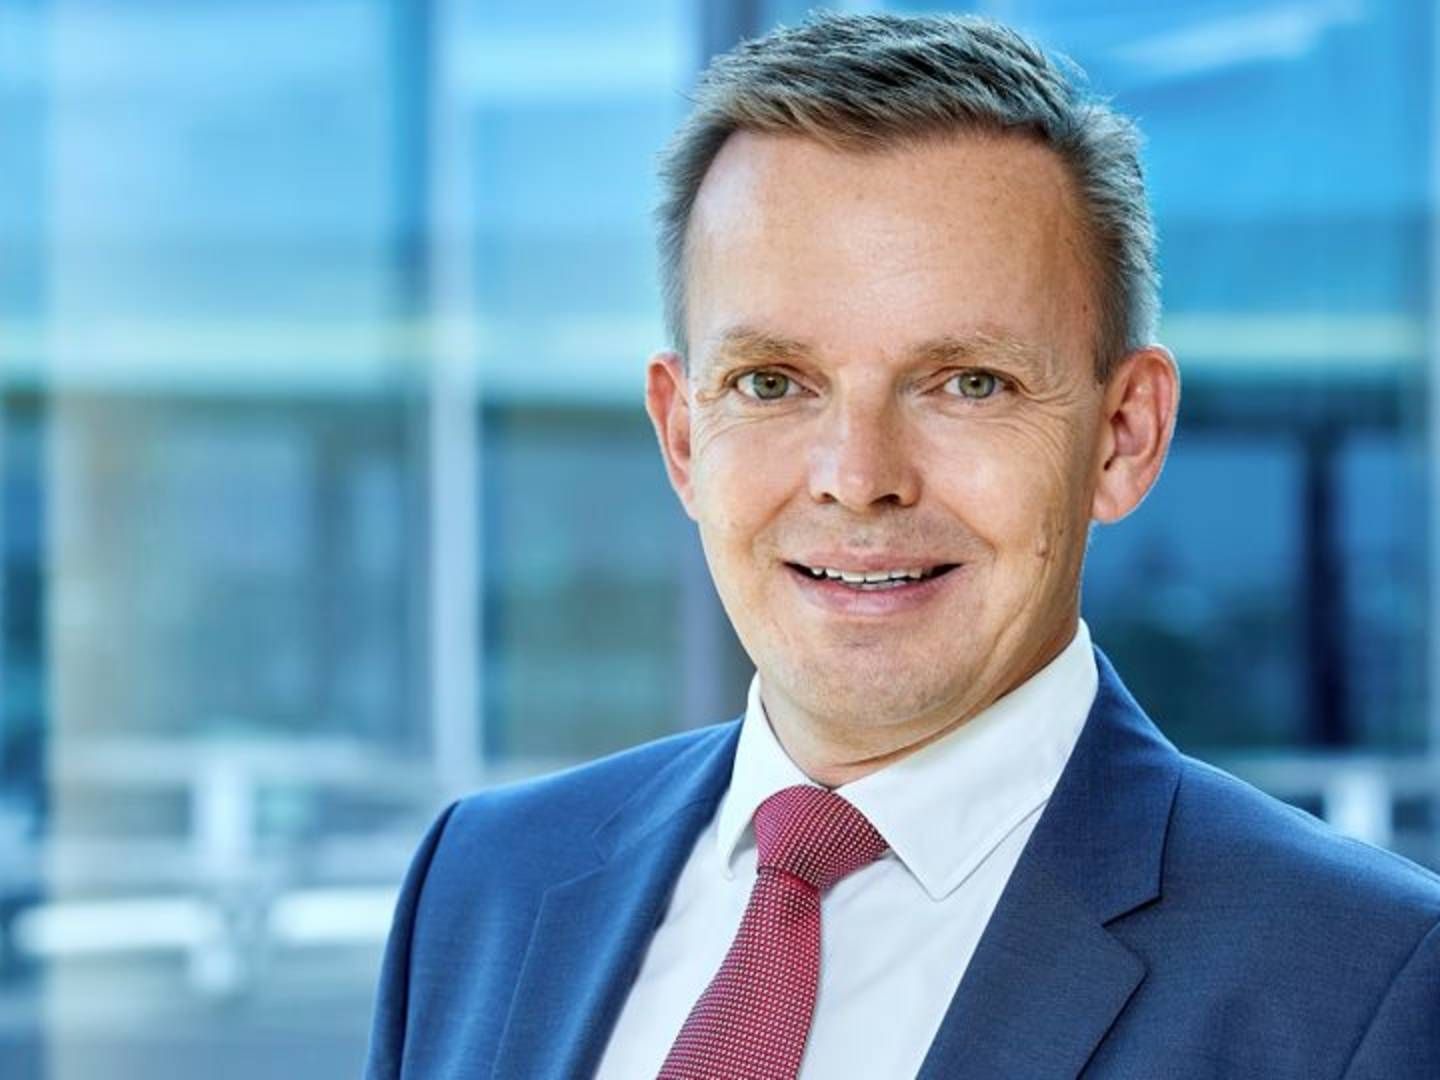 Lars Kronow, formand for FSR - danske revisorer, insisterer på, at revisorerne også i et tæt samarbejde med Dansk Erhverv kan fastholde troværdigheden til "offentlighedens tillidsrepræsentant". | Foto: PR